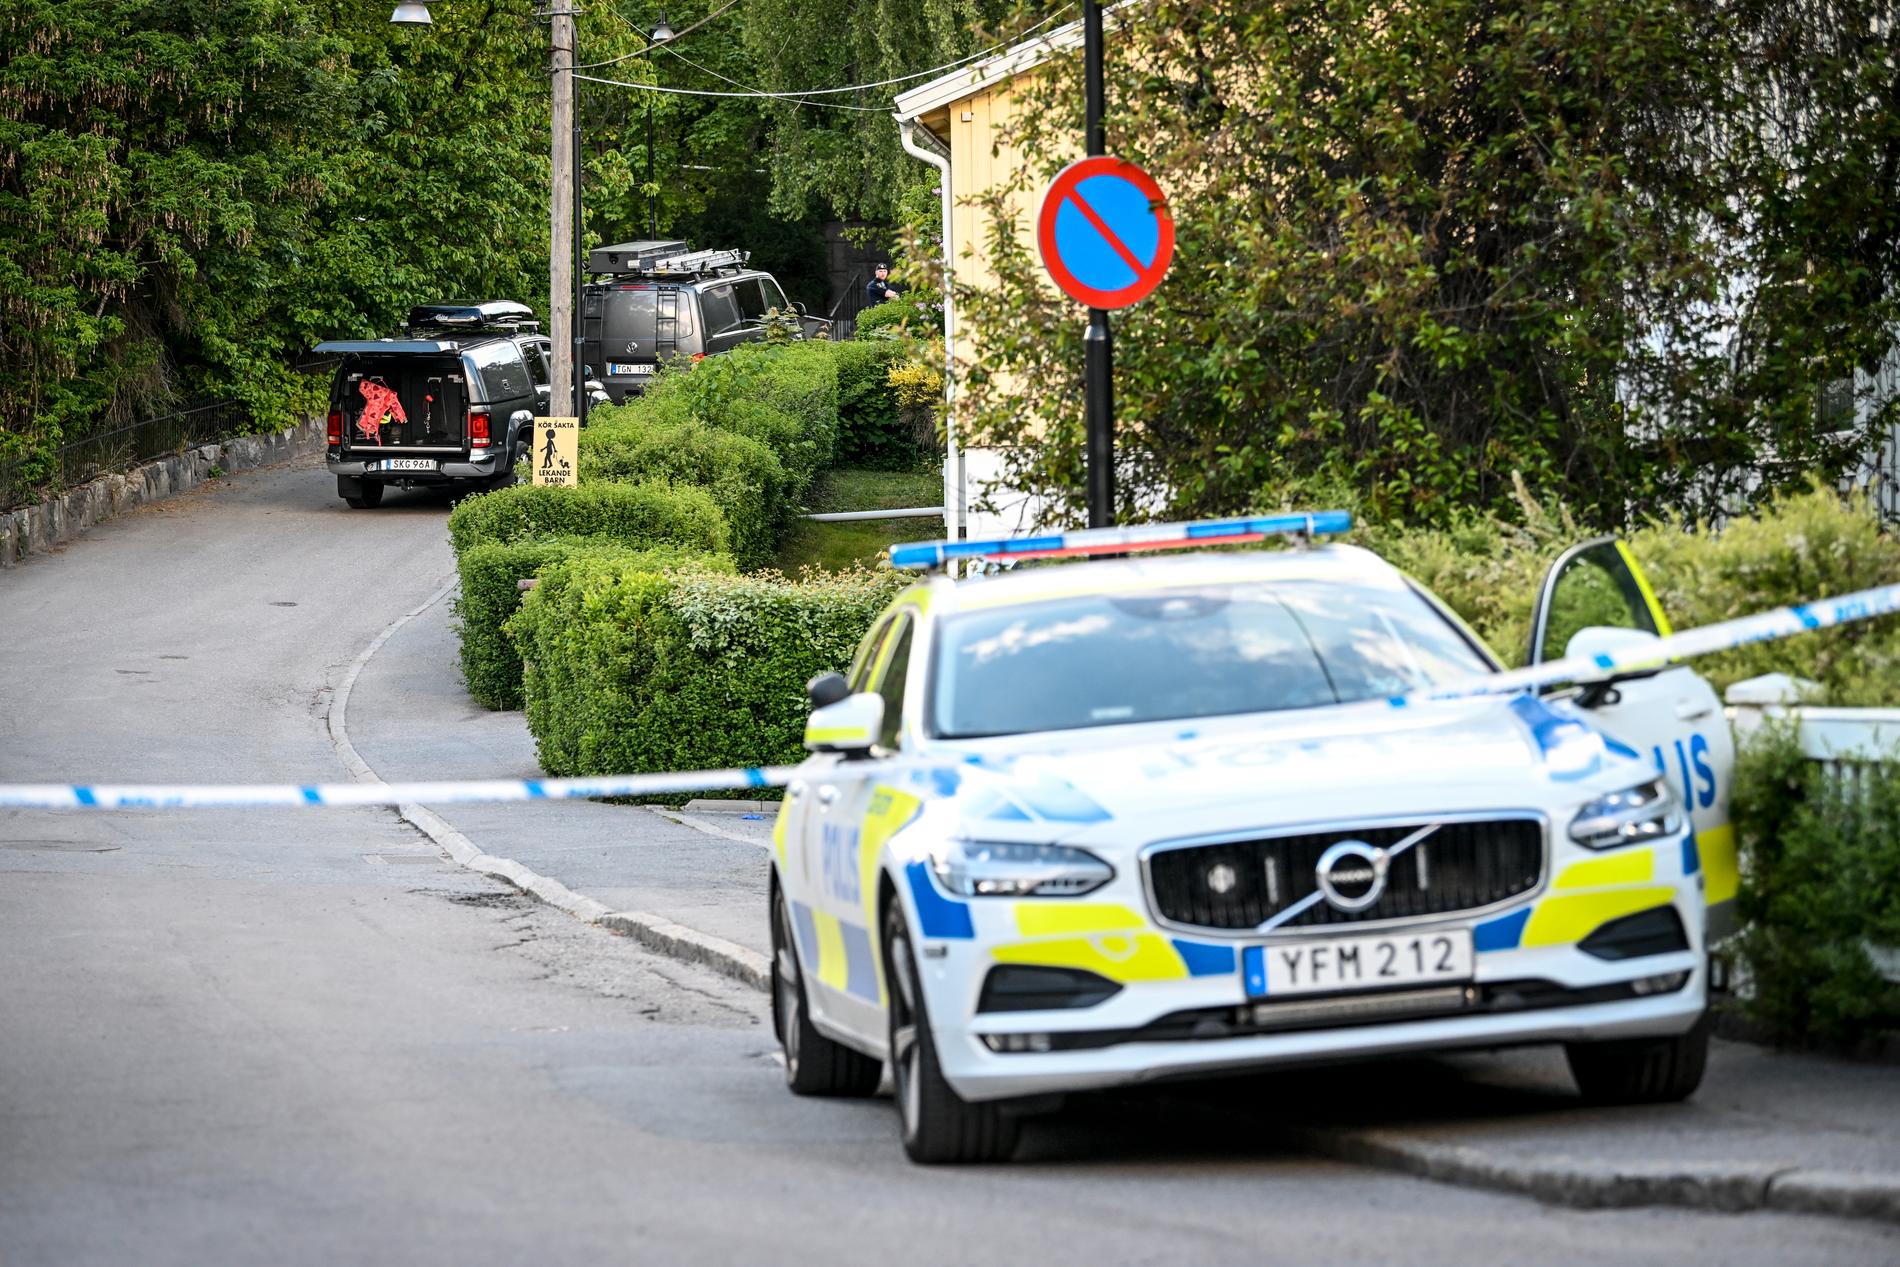 En kvinna i 40-årsåldern och ett barn i femårsåldern har avlidit efter att ha misshandlats svårt i Mälarhöjden i södra Stockholm. En man har anhållits misstänkt för mord efter en stor polisinsats.